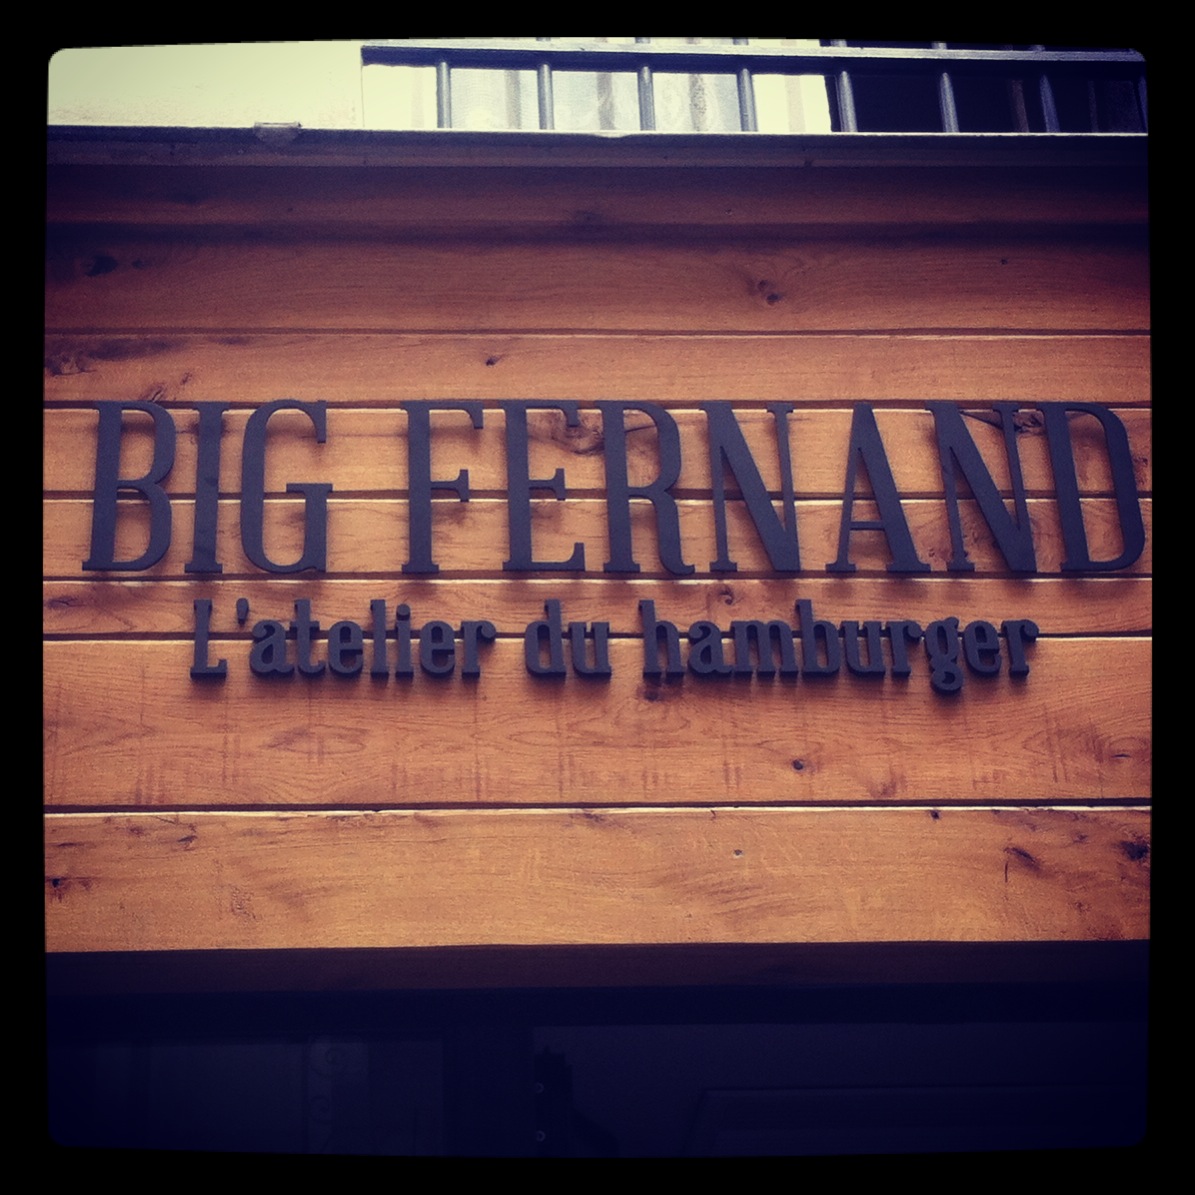 Big Fernand - L'atelier du hambuger